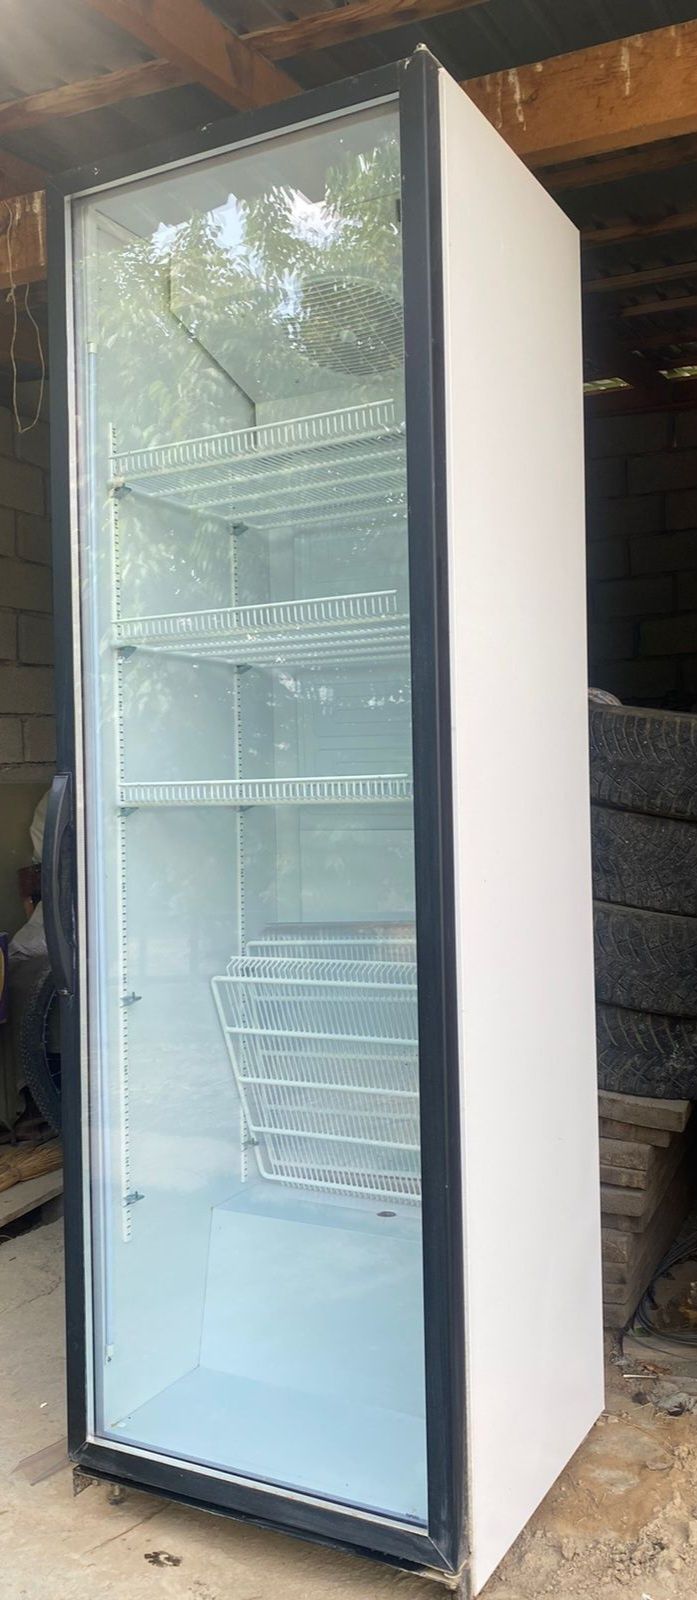 Холодильный шкаф